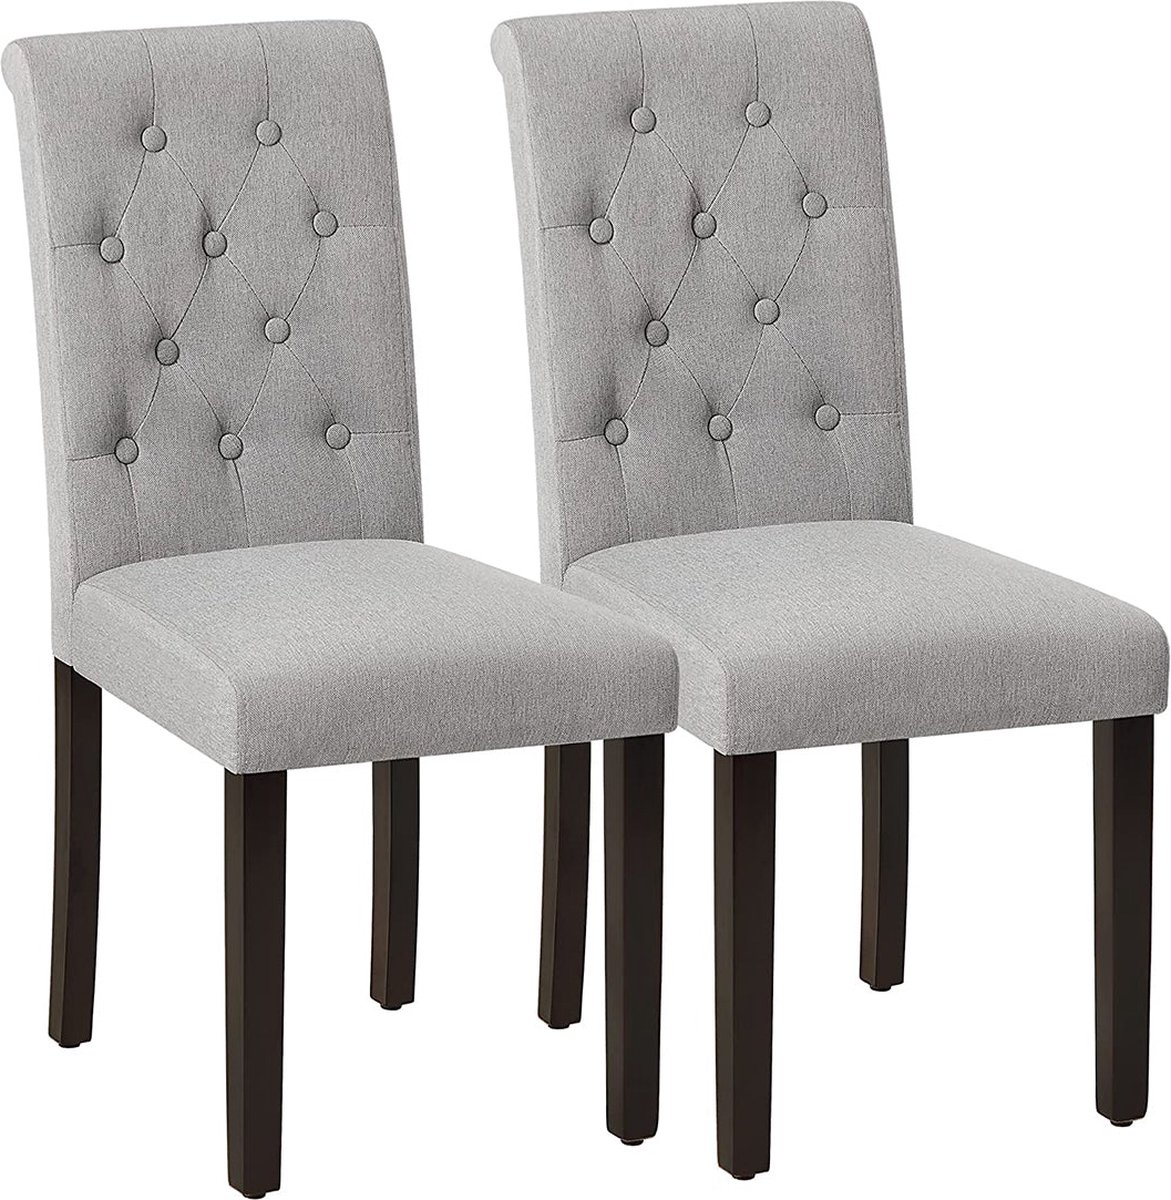 Eetkamerstoelen - Keukenstoelen - Eetstoelen - stoelen - Grijs - Set van 2